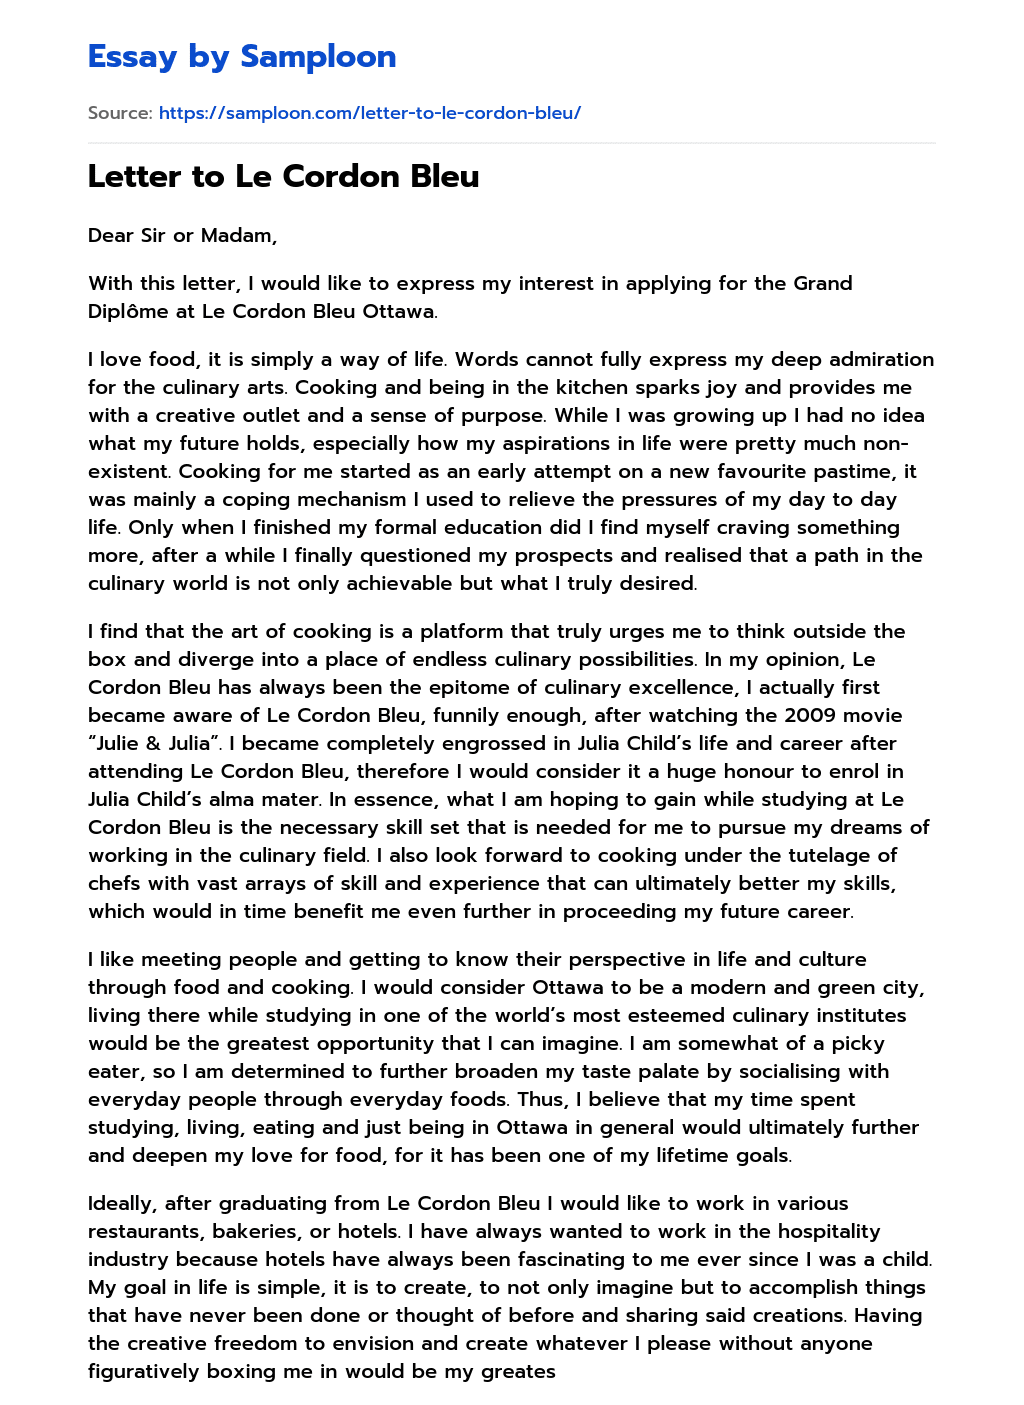 Letter to Le Cordon Bleu essay